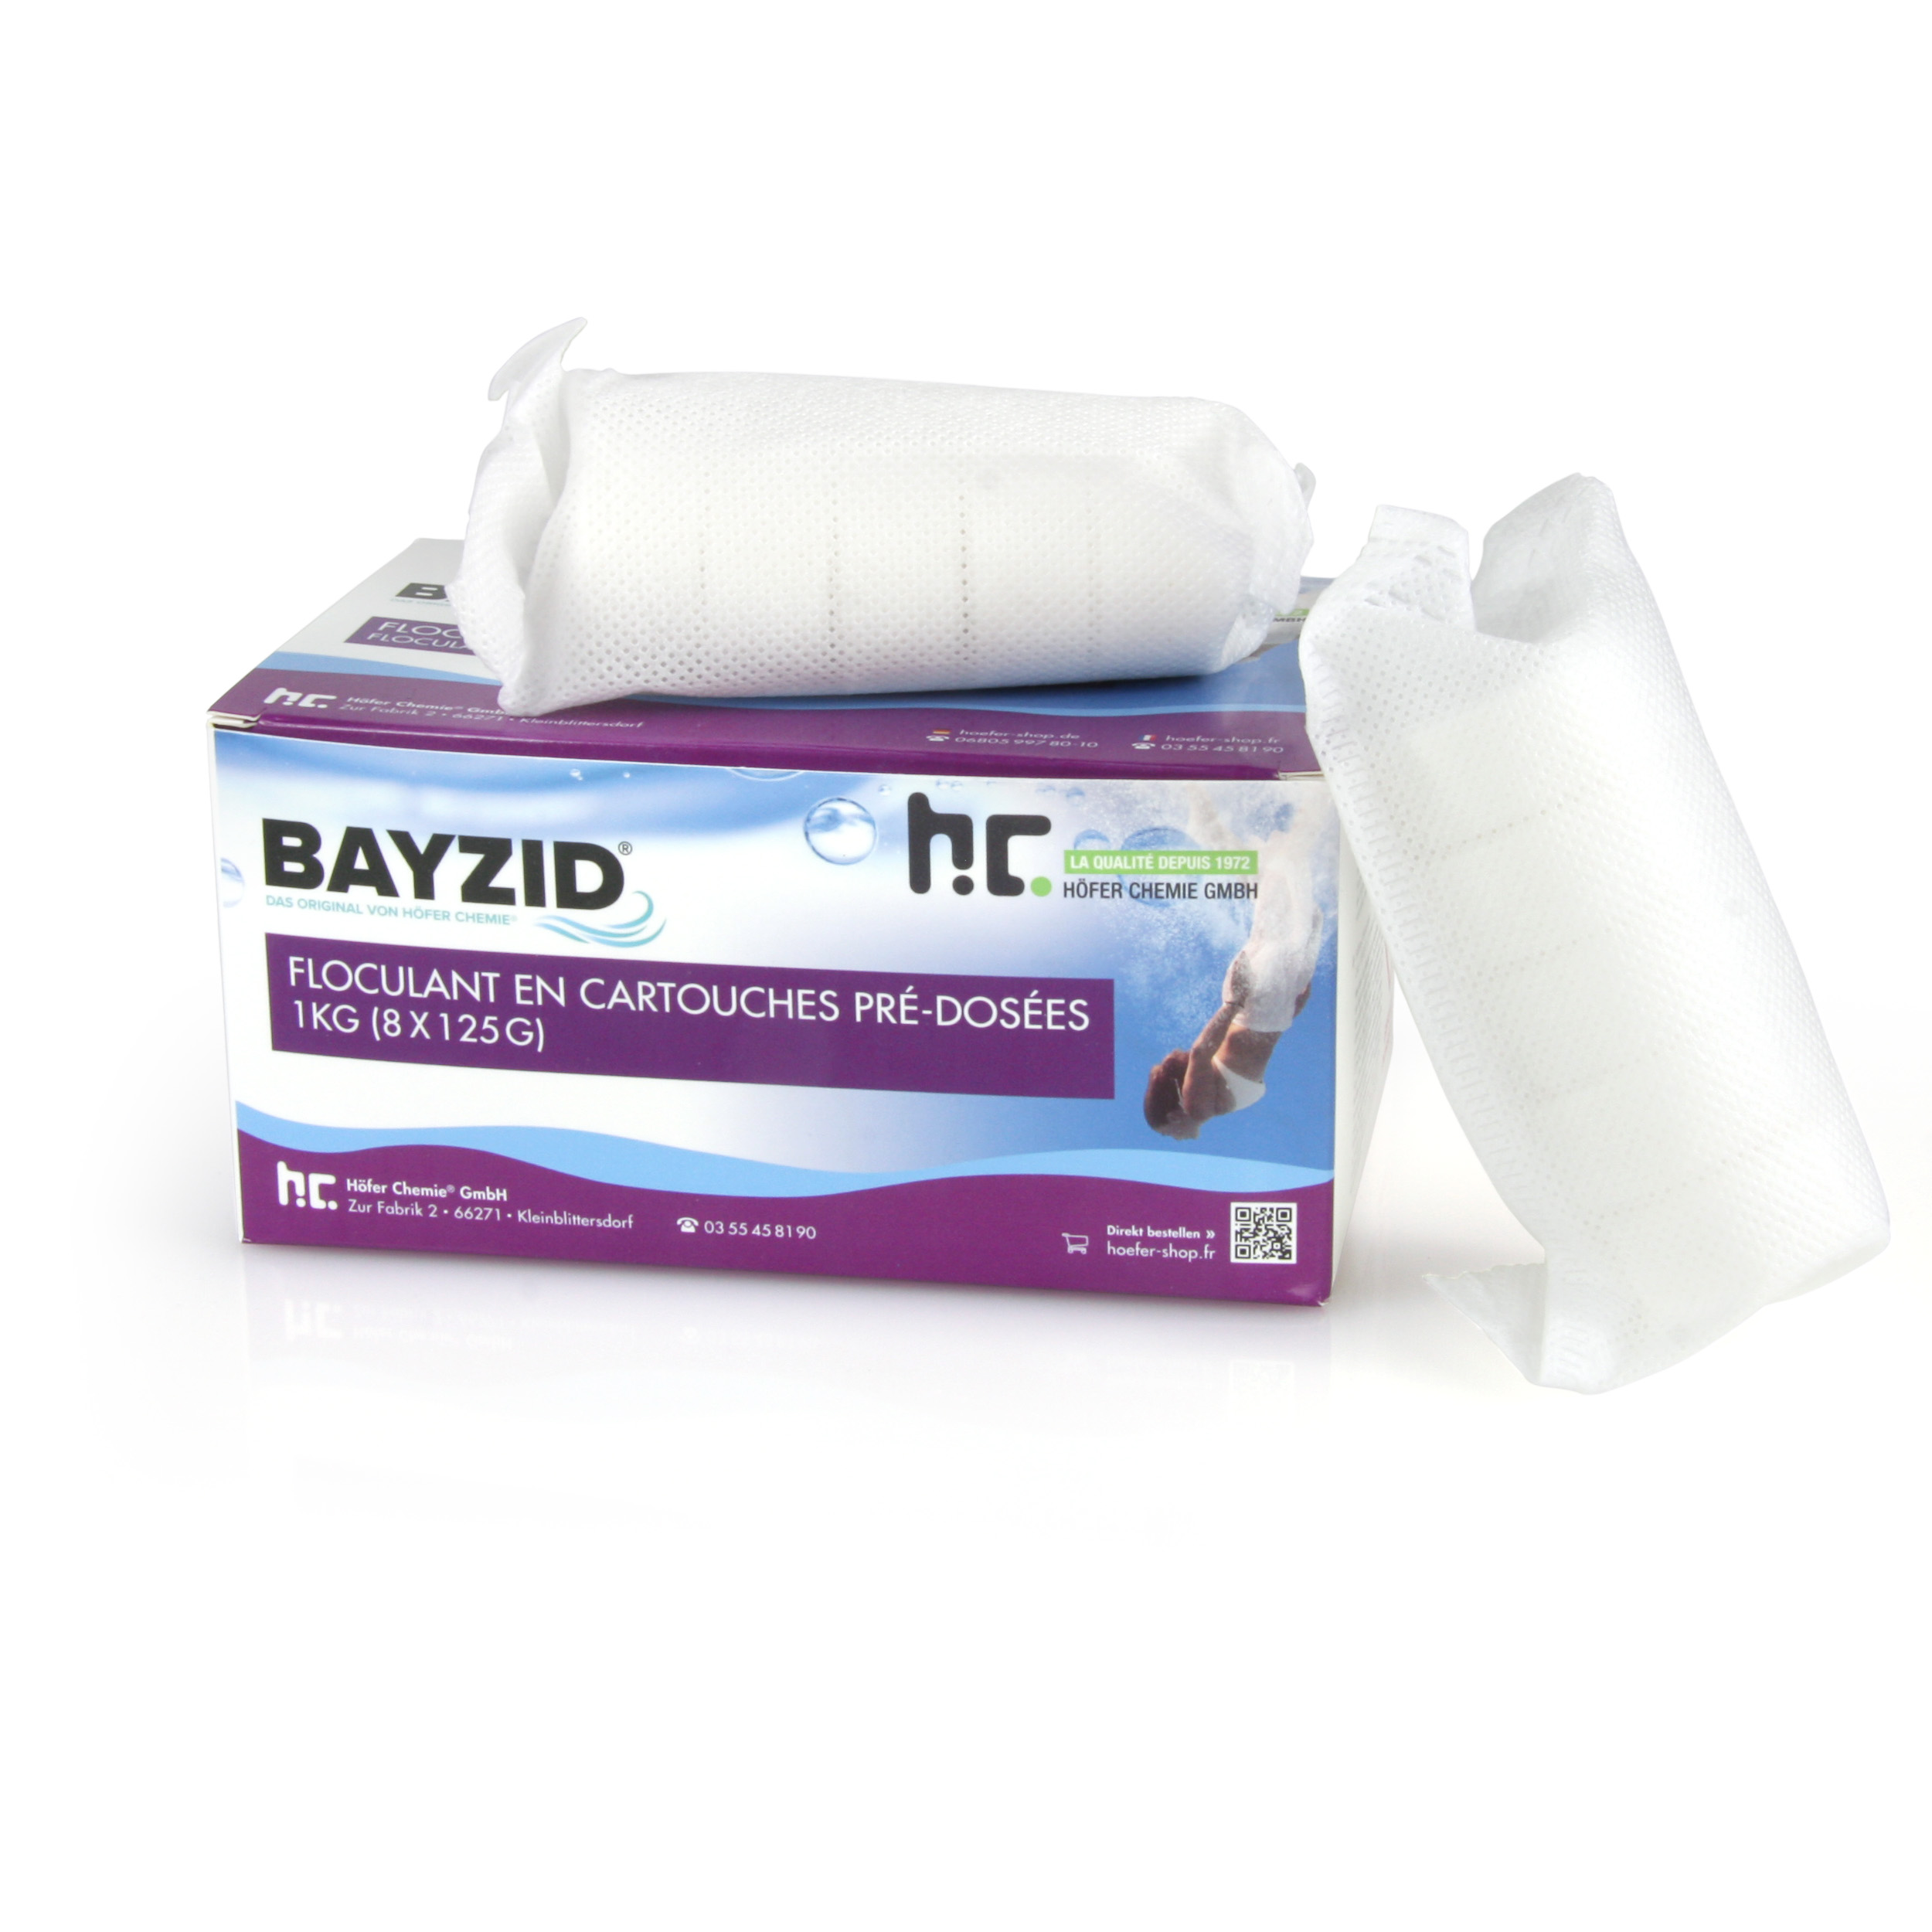 1 kg BAYZID® Cartouches de floculant pré-dosées (8x 125g)